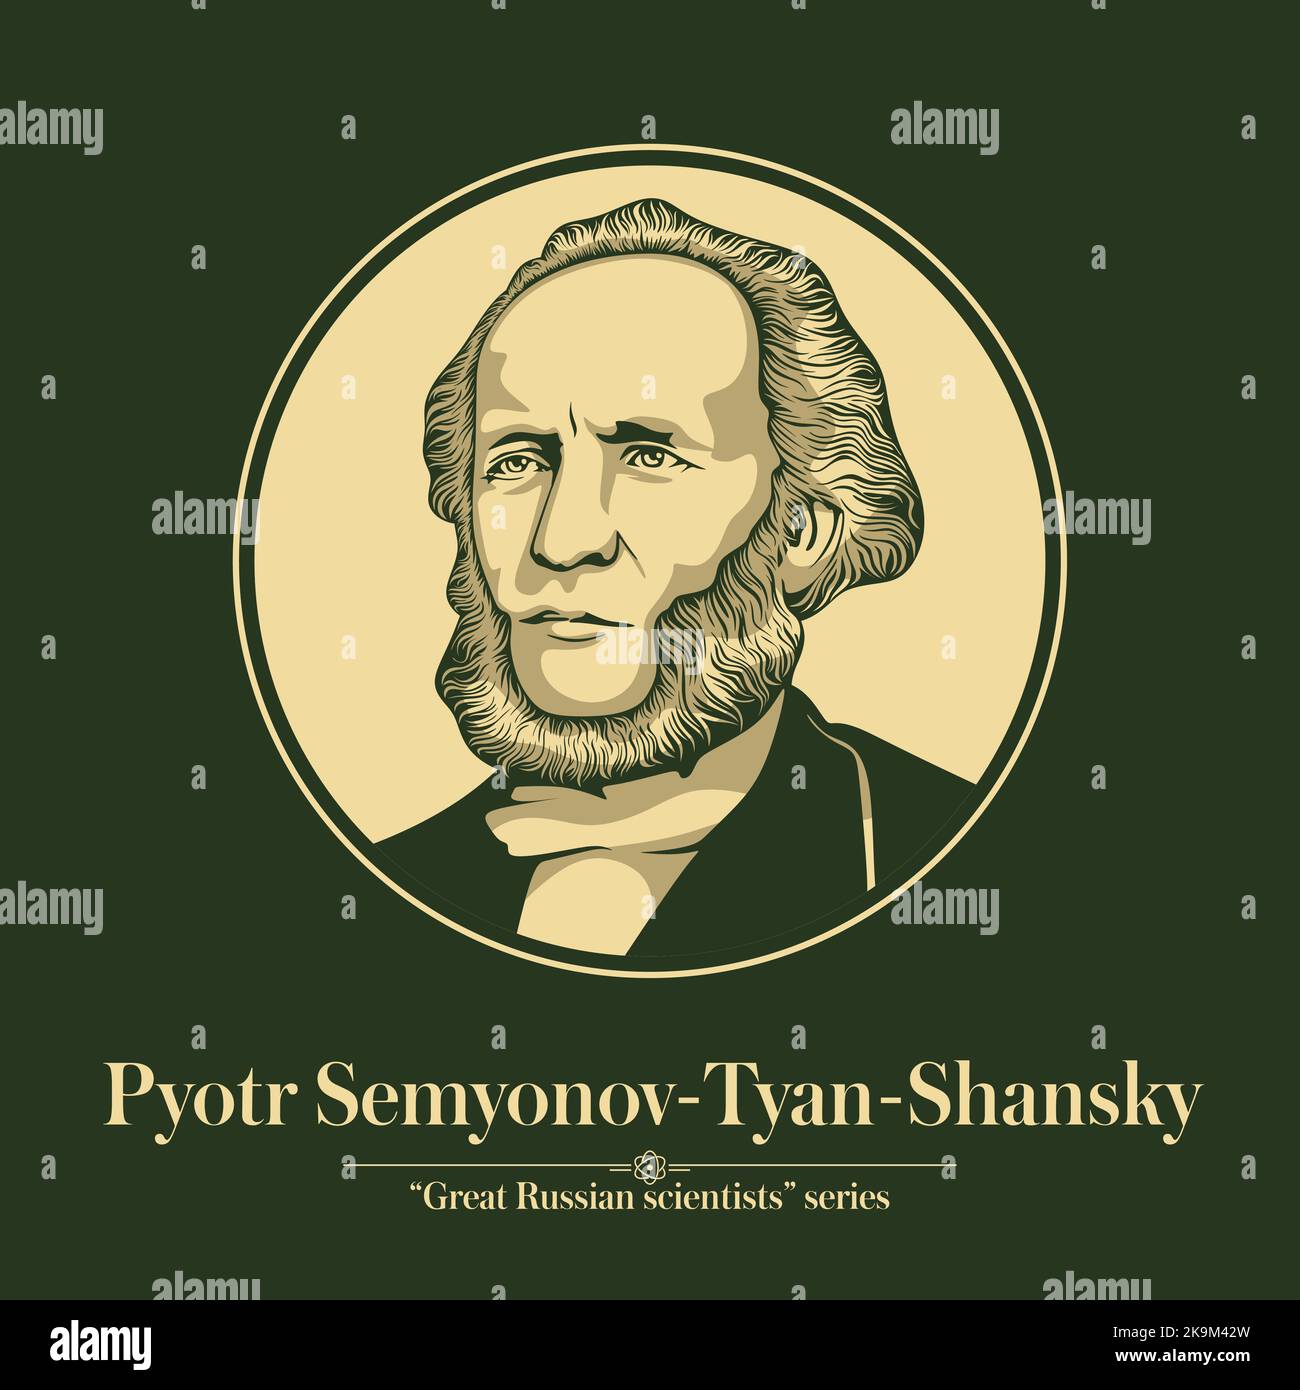 La Grande Serie di scienziati russi. Pyotr Semyonov-Tyan-Shansky era un geografo e statistico russo che gestiva la geografia russa Illustrazione Vettoriale